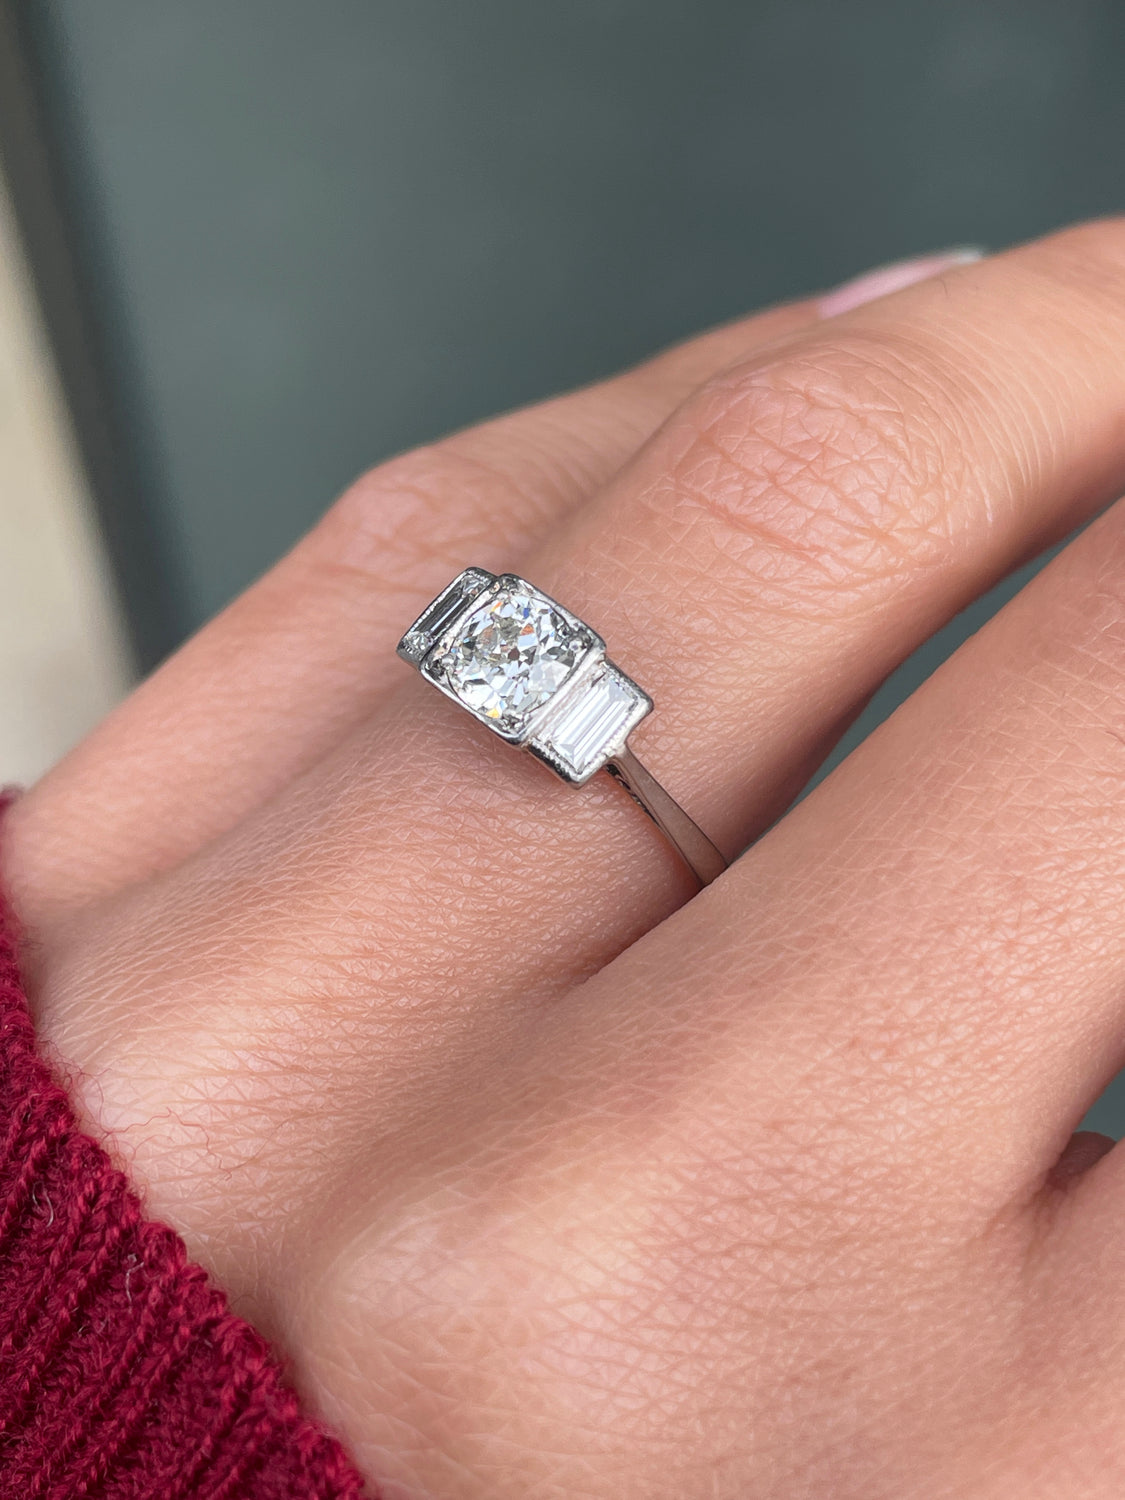 Art Deco 18ct White Gold and Platinum Diamond Three-Stone Engagement Ring